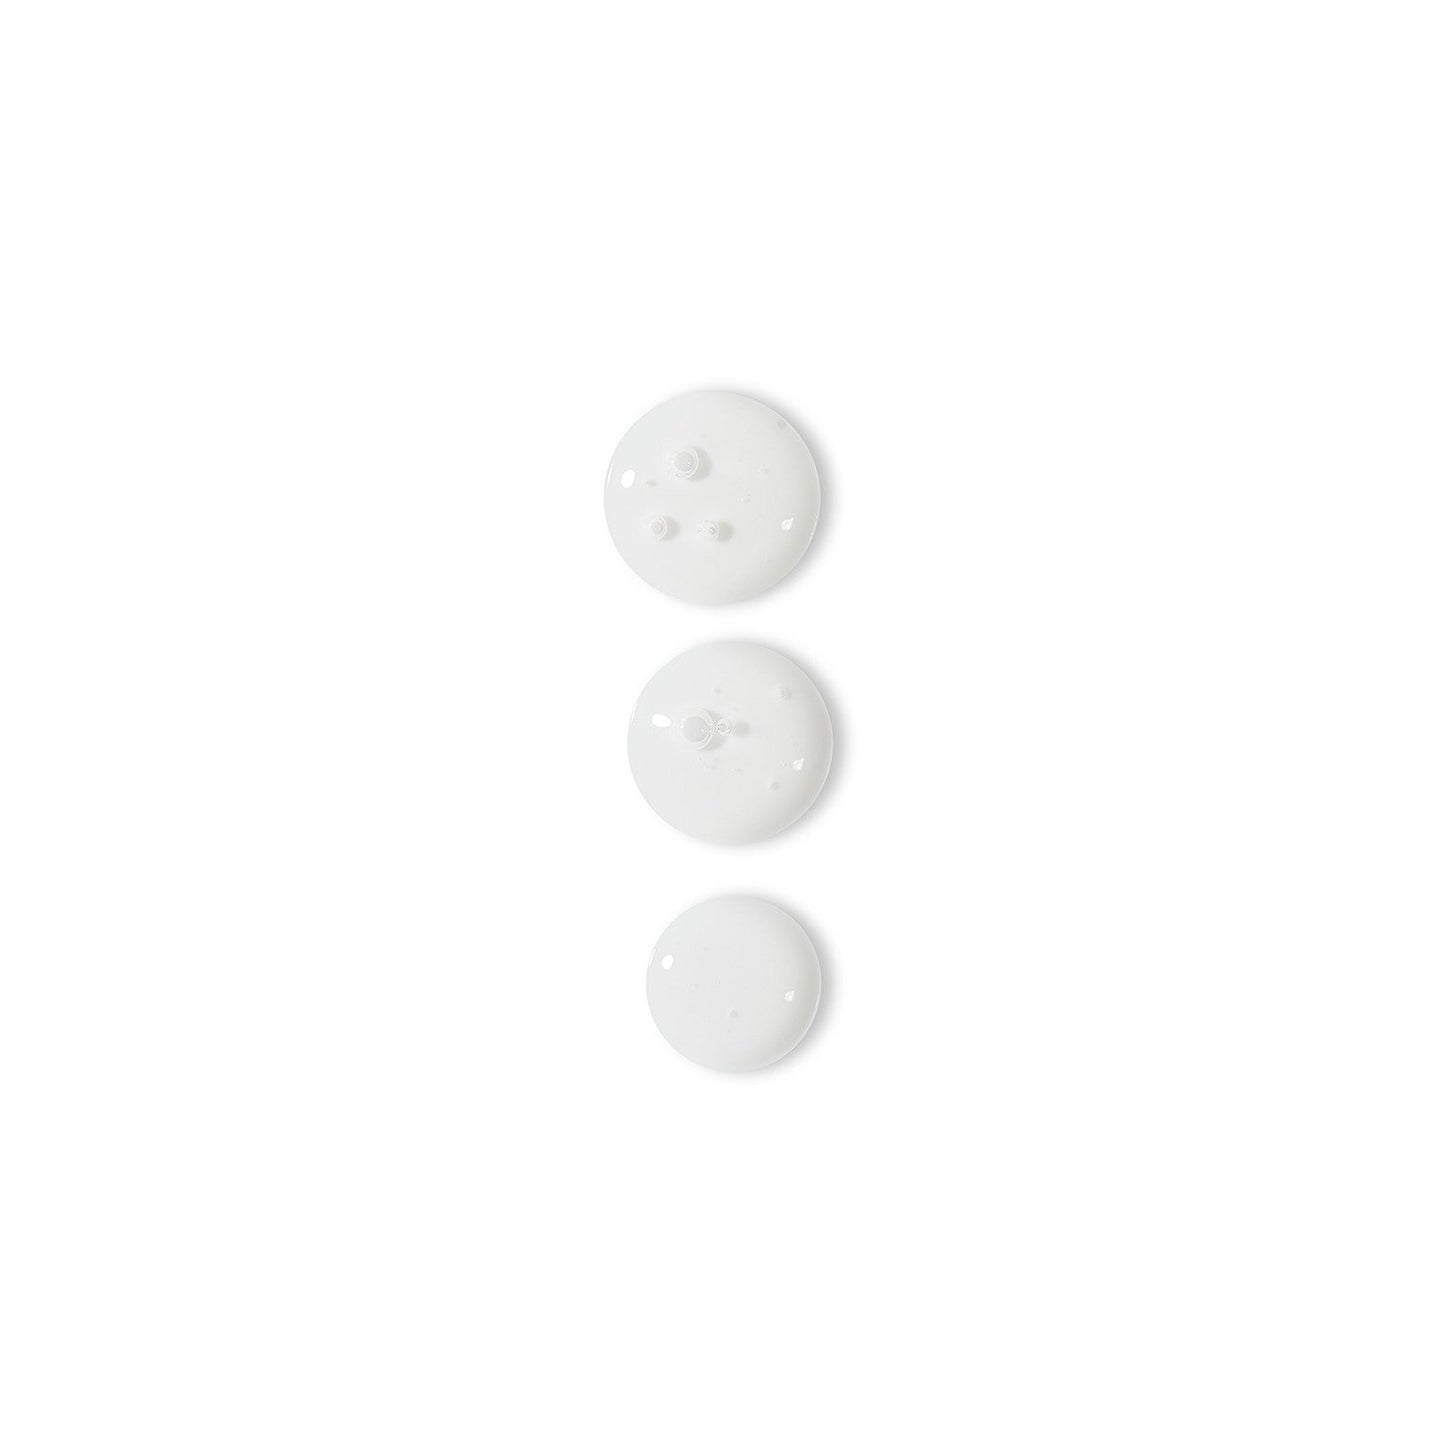 Drei weiße Knöpfe auf einer weißen Oberfläche, die die Hautstruktur verbessern und dem Rapid Reveal Peel 30 ml | unterzogen werden Professionelles Peelingverfahren.